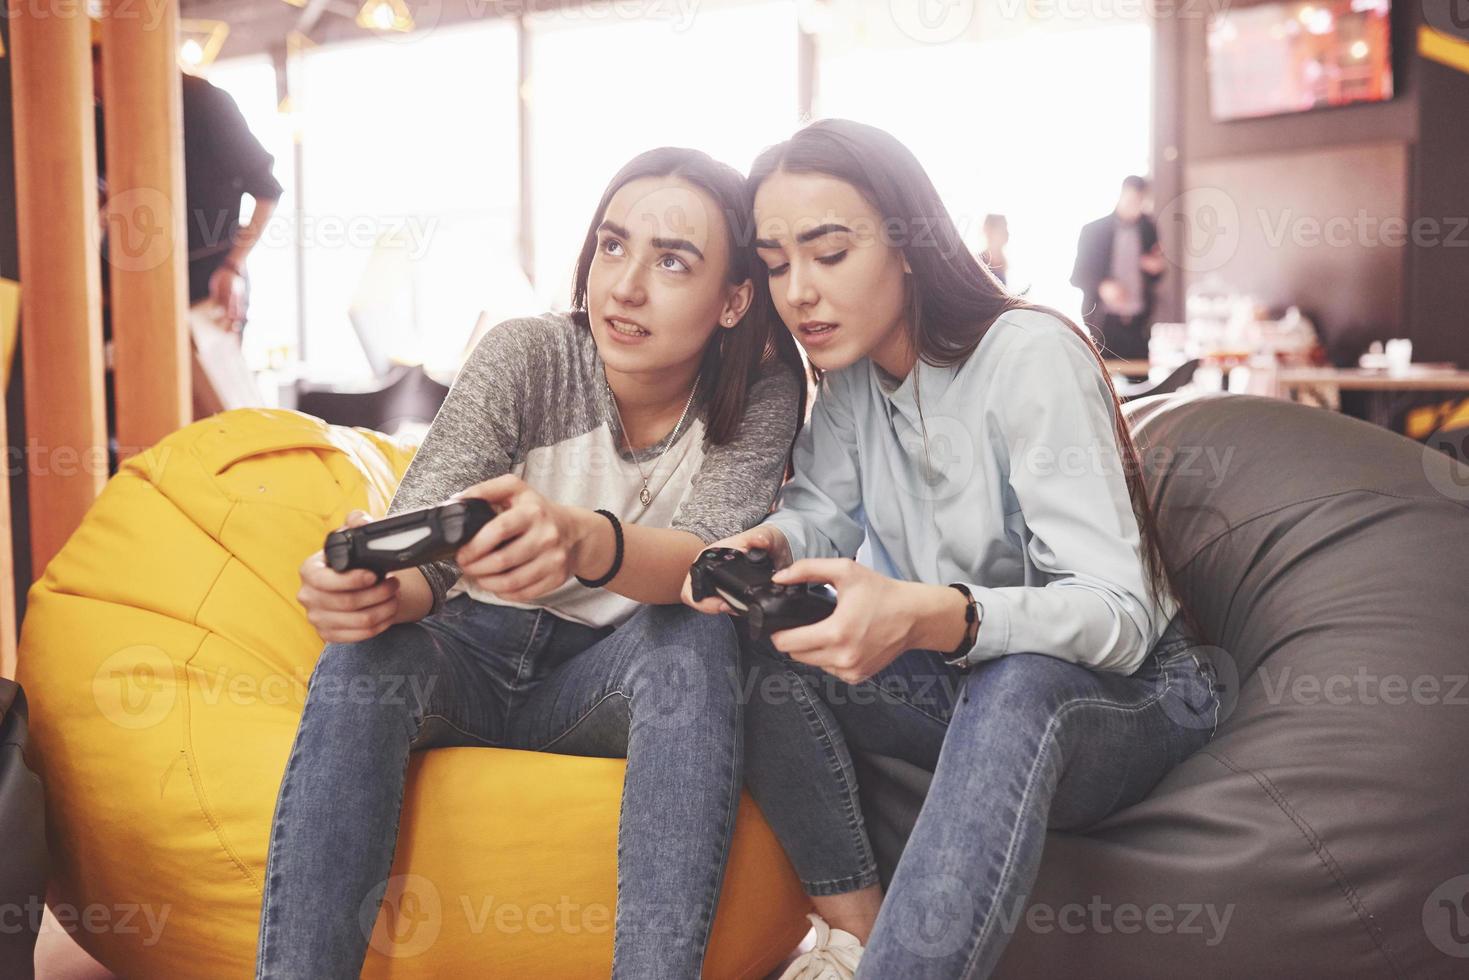 sorelle gemelle giocano sulla console. le ragazze tengono i joystick in mano e si divertono foto